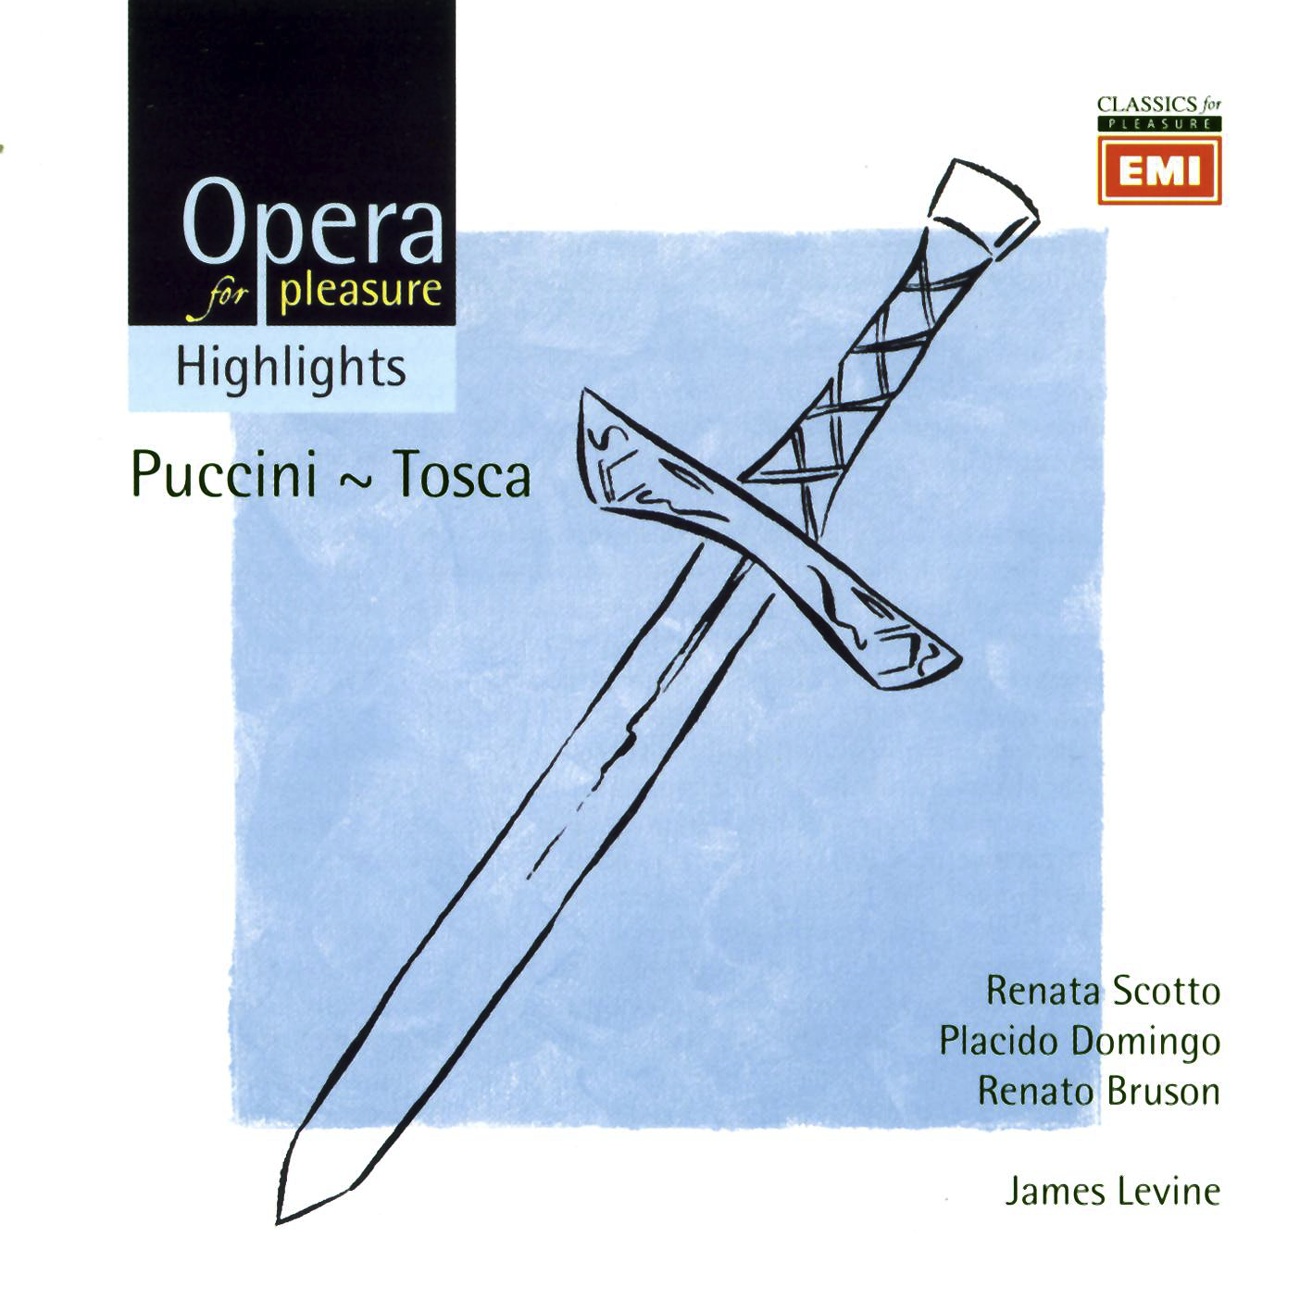 Tosca - Opera in three acts (1997 Digital Remaster), Act III: Presto, su!  Mario!  Mario! (Tosca, Sciarrone, Spoletta, Soldiers)